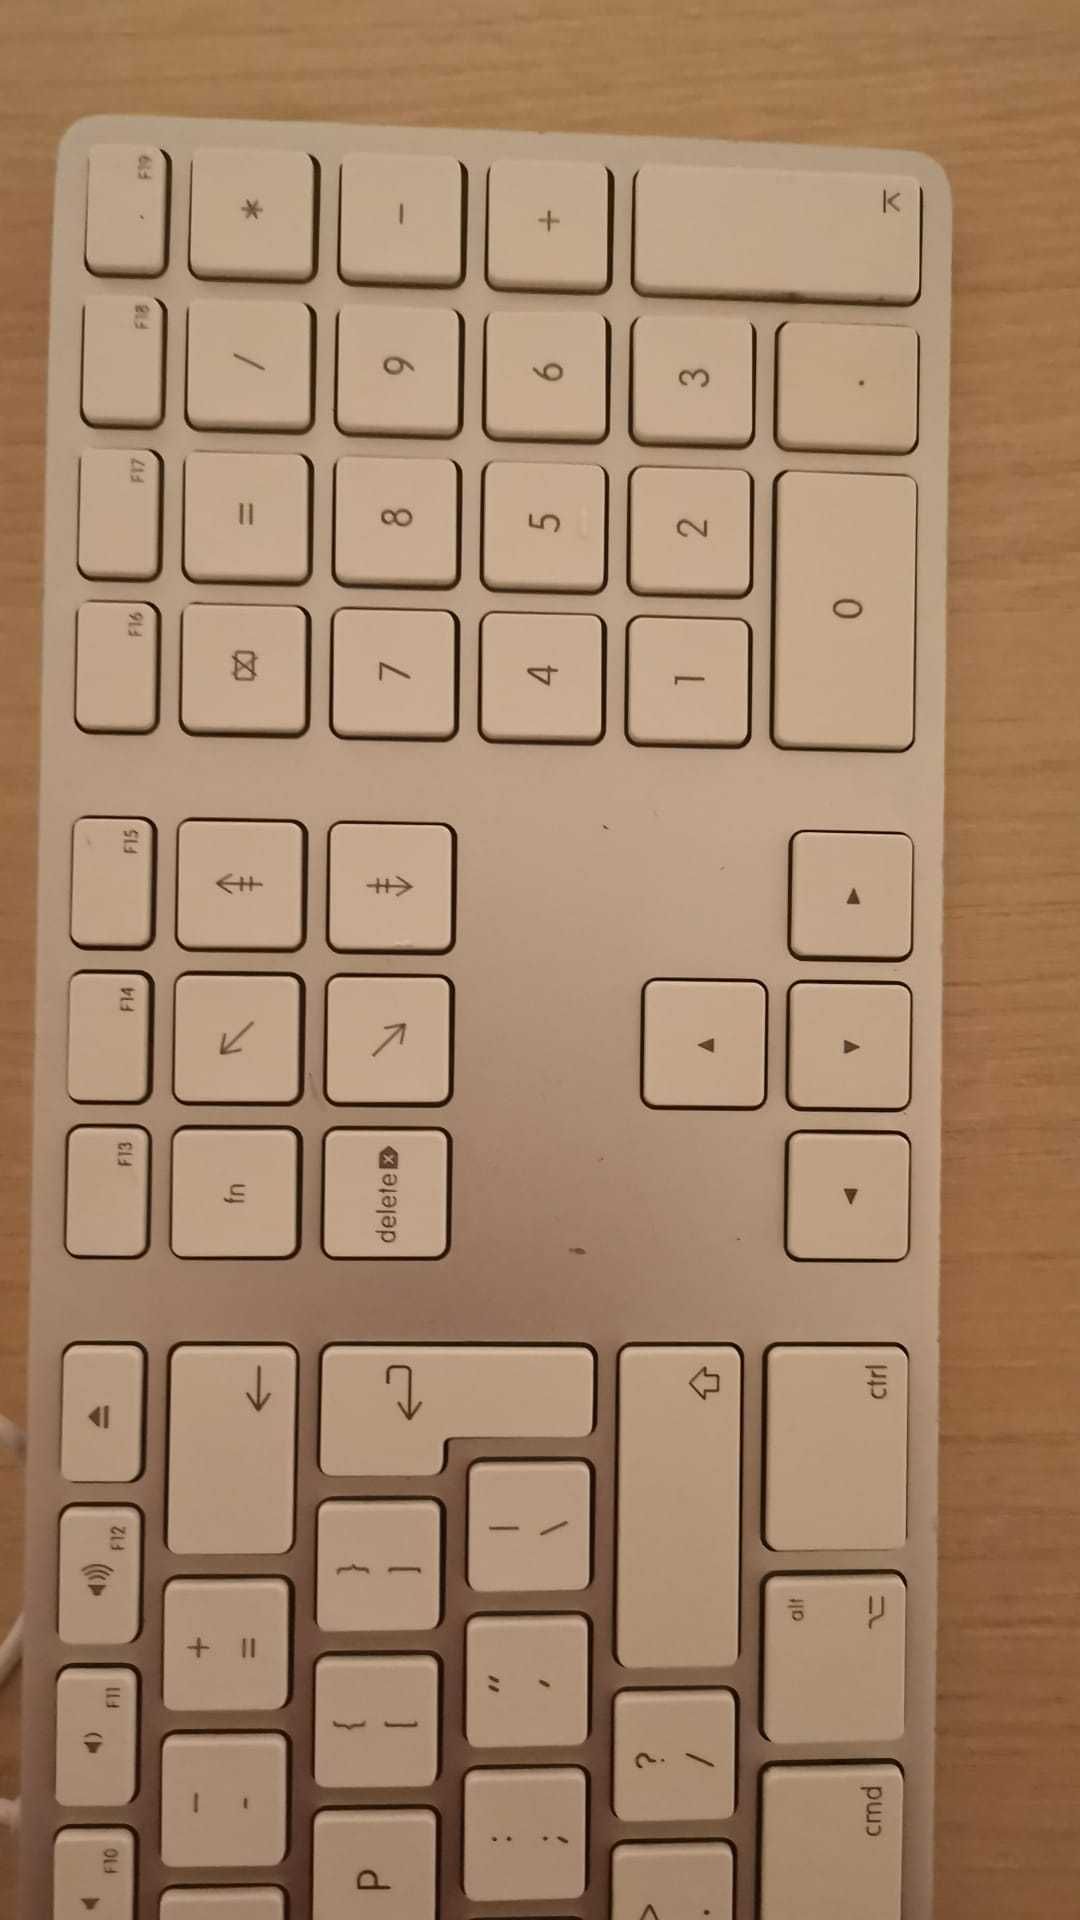 Tastatură Apple Mac Magik Keyboard A1243, originală, SH, cu garanție